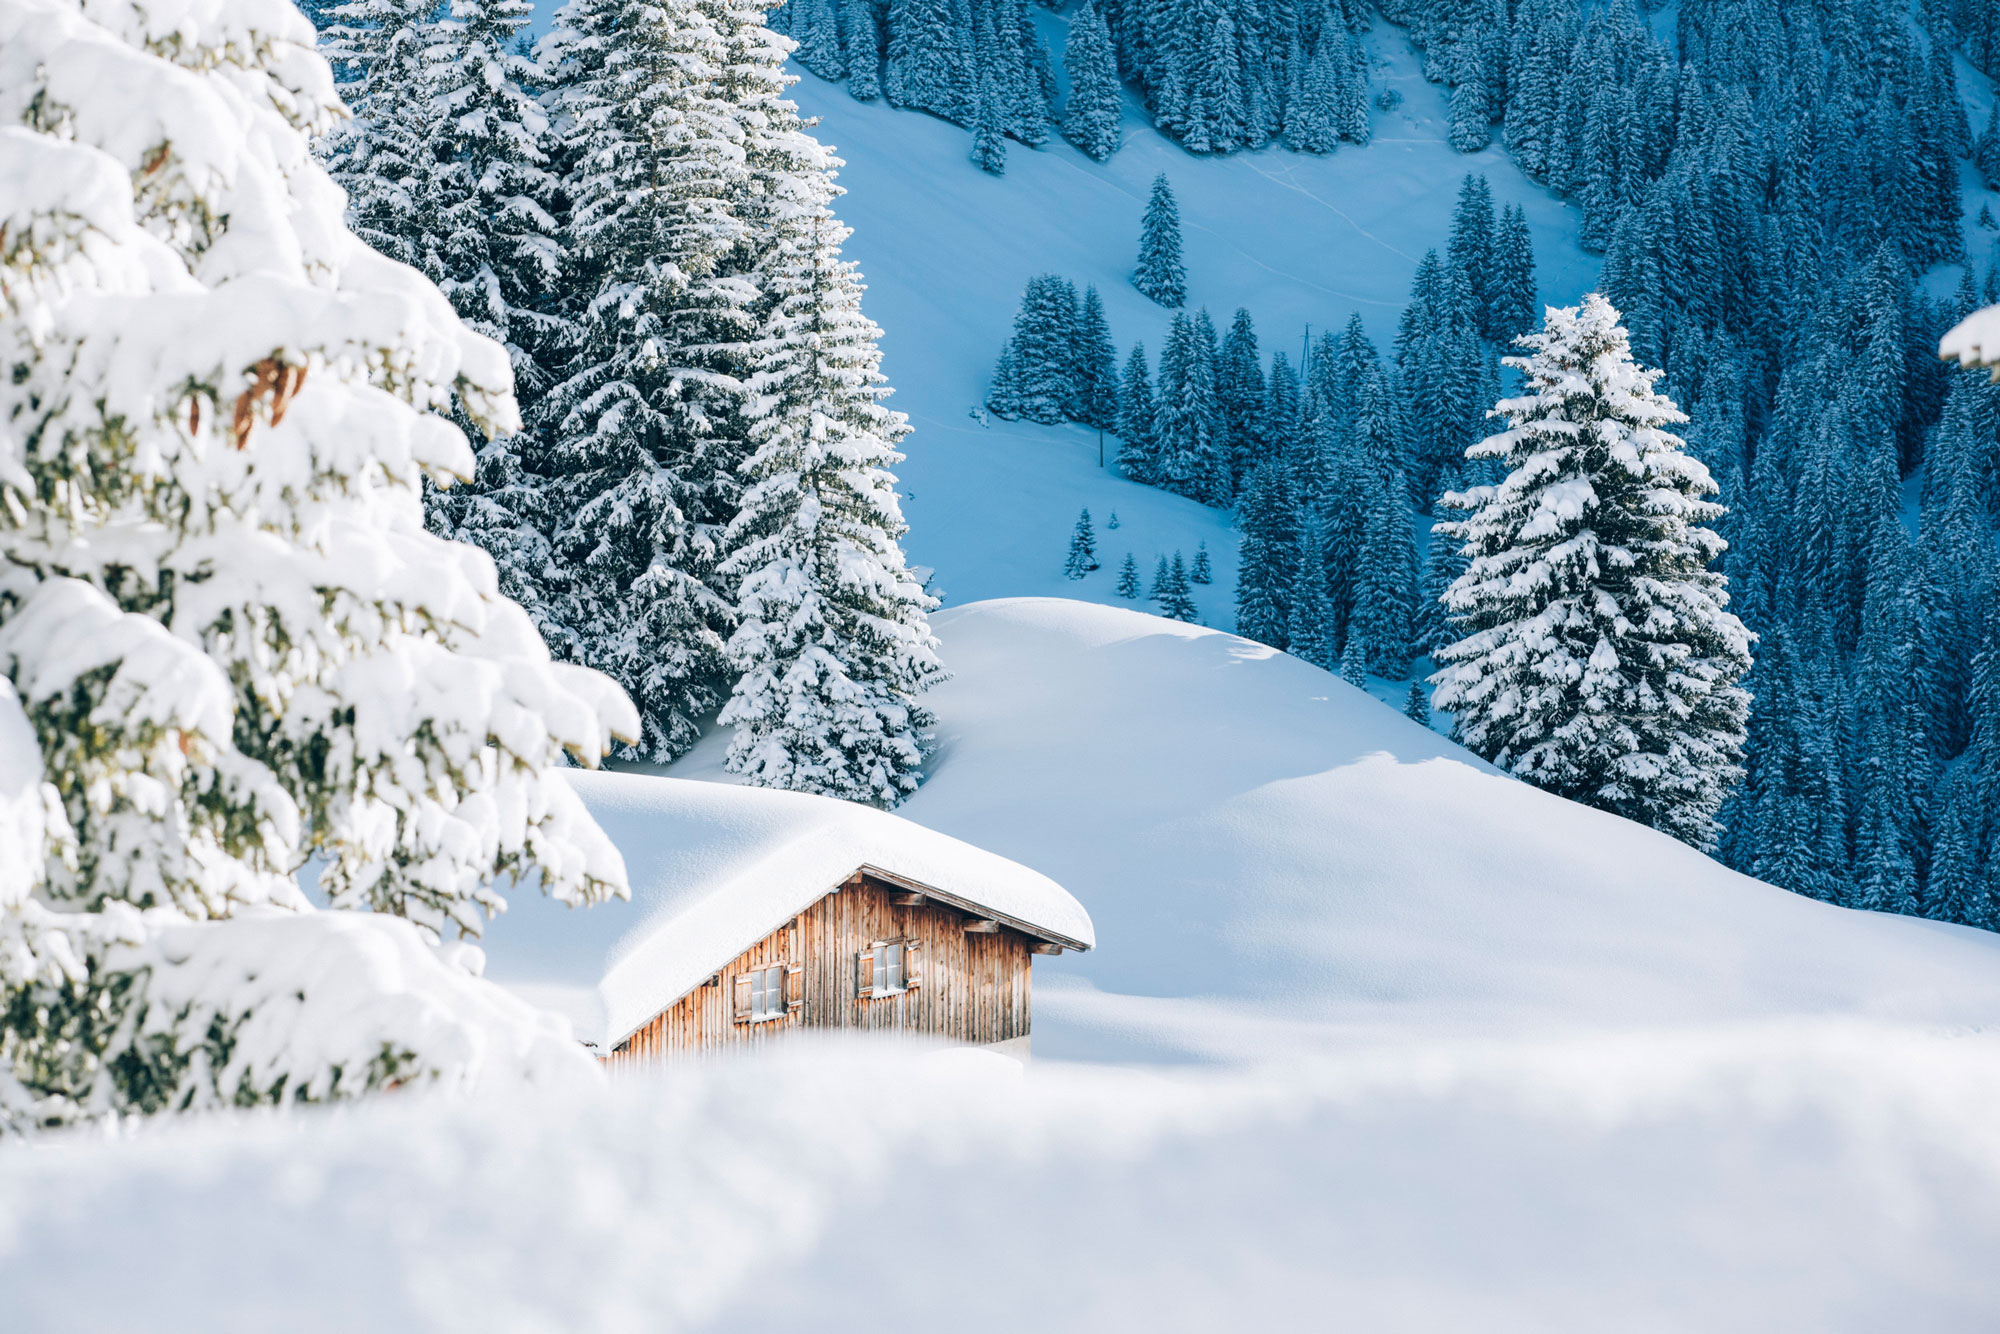 Mats_Lech_Winter_Alpenquartier